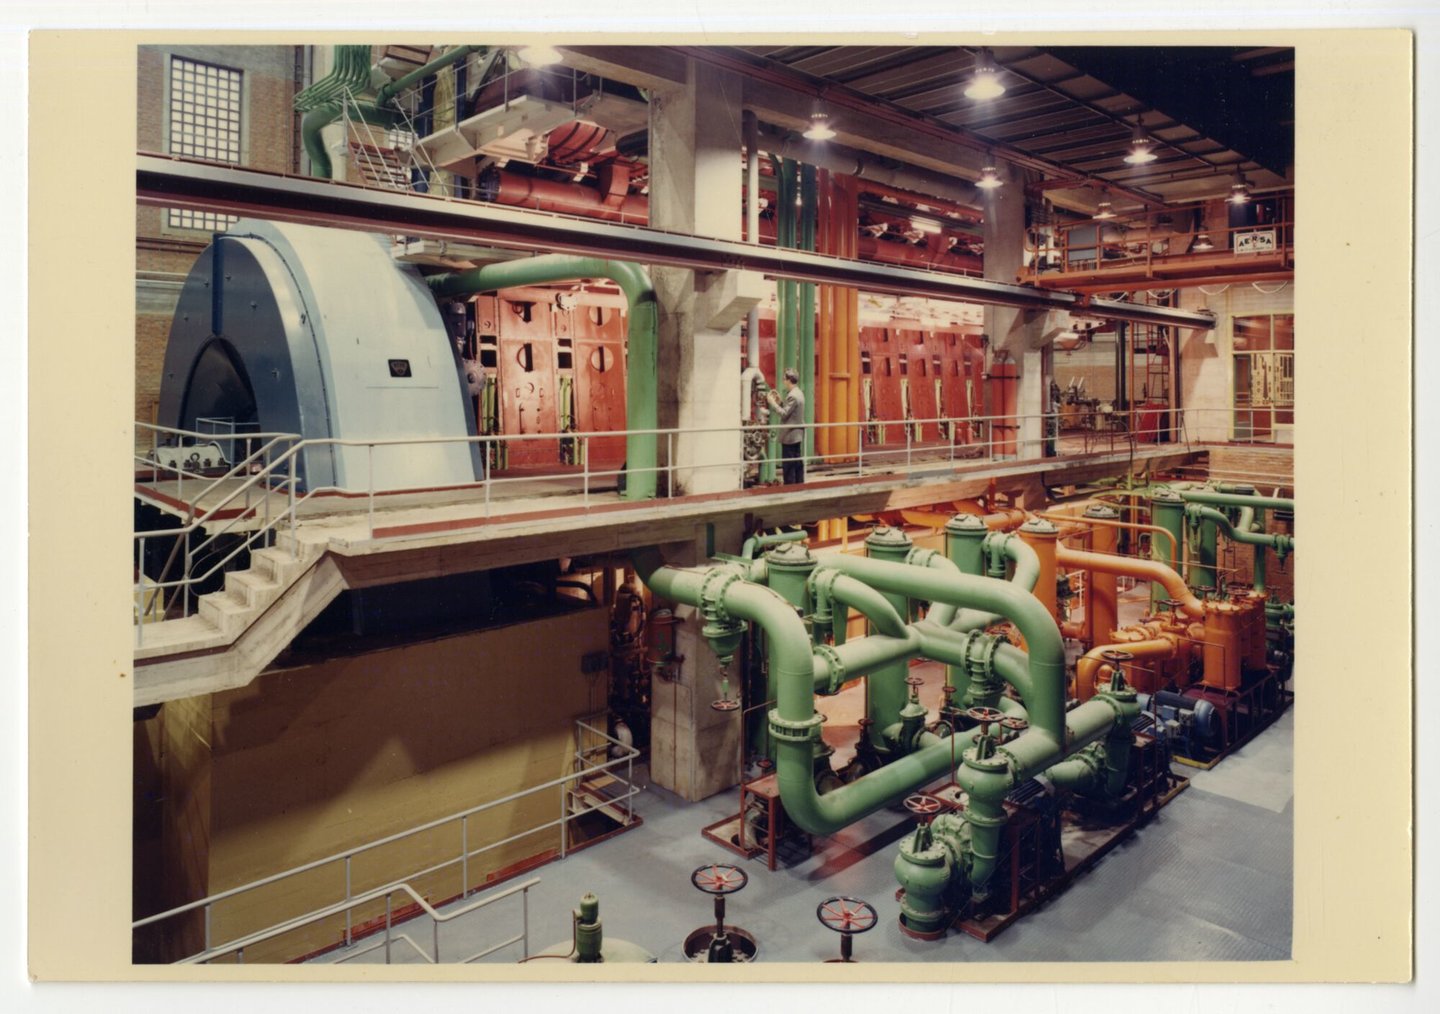 Machinezaal van de stedelijke elektriciteitscentrale Ham in Gent